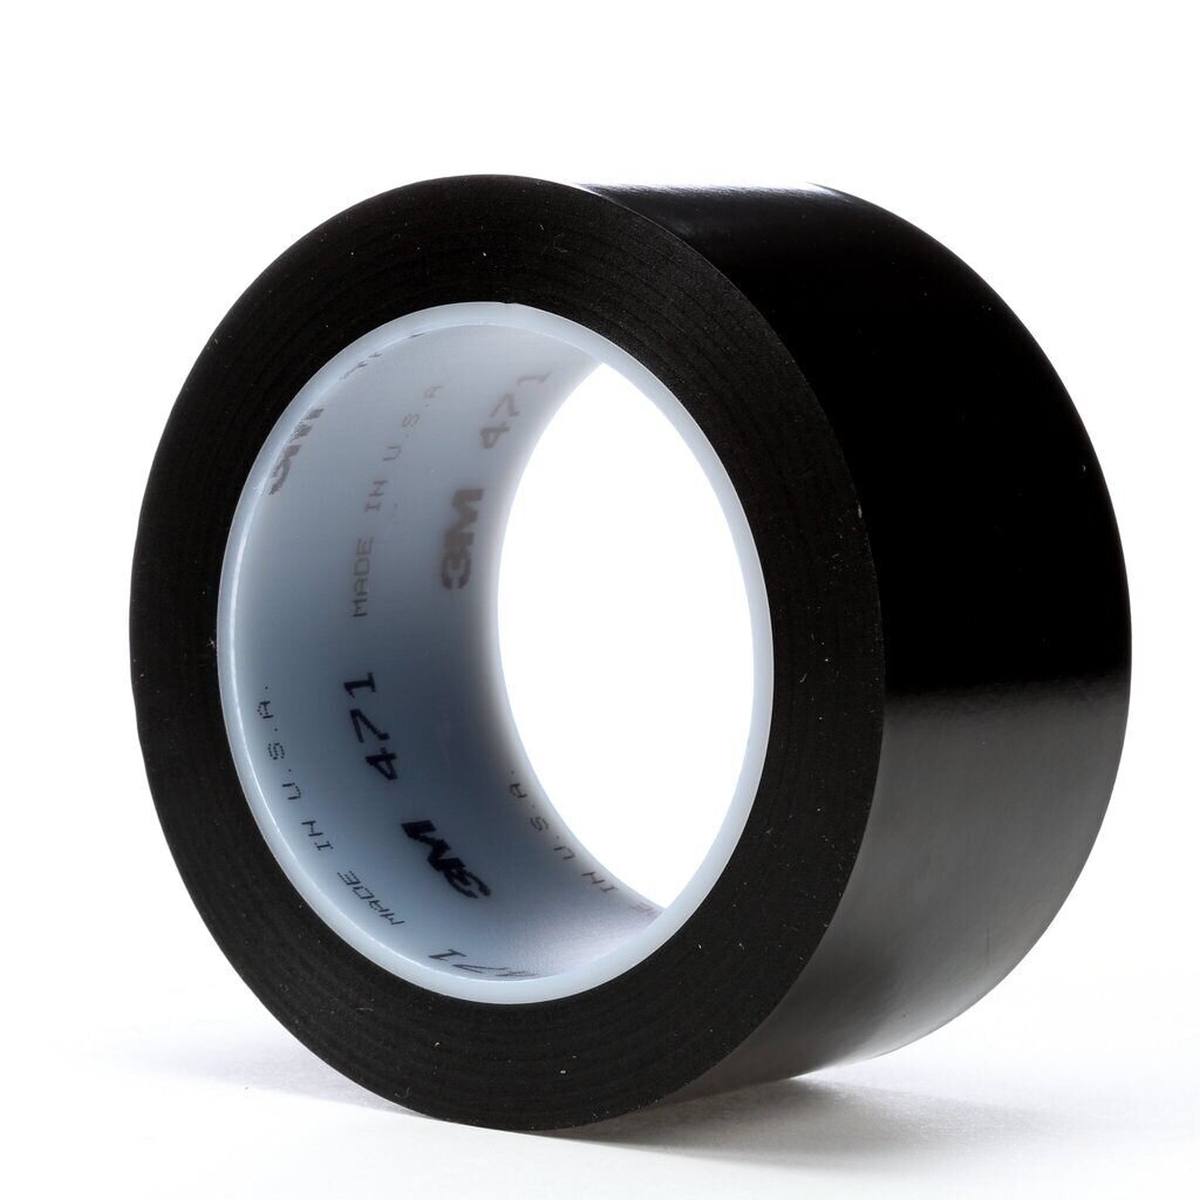 Nastro adesivo 3M in PVC morbido 471 F, nero, 50 mm x 33 m, 0,13 mm